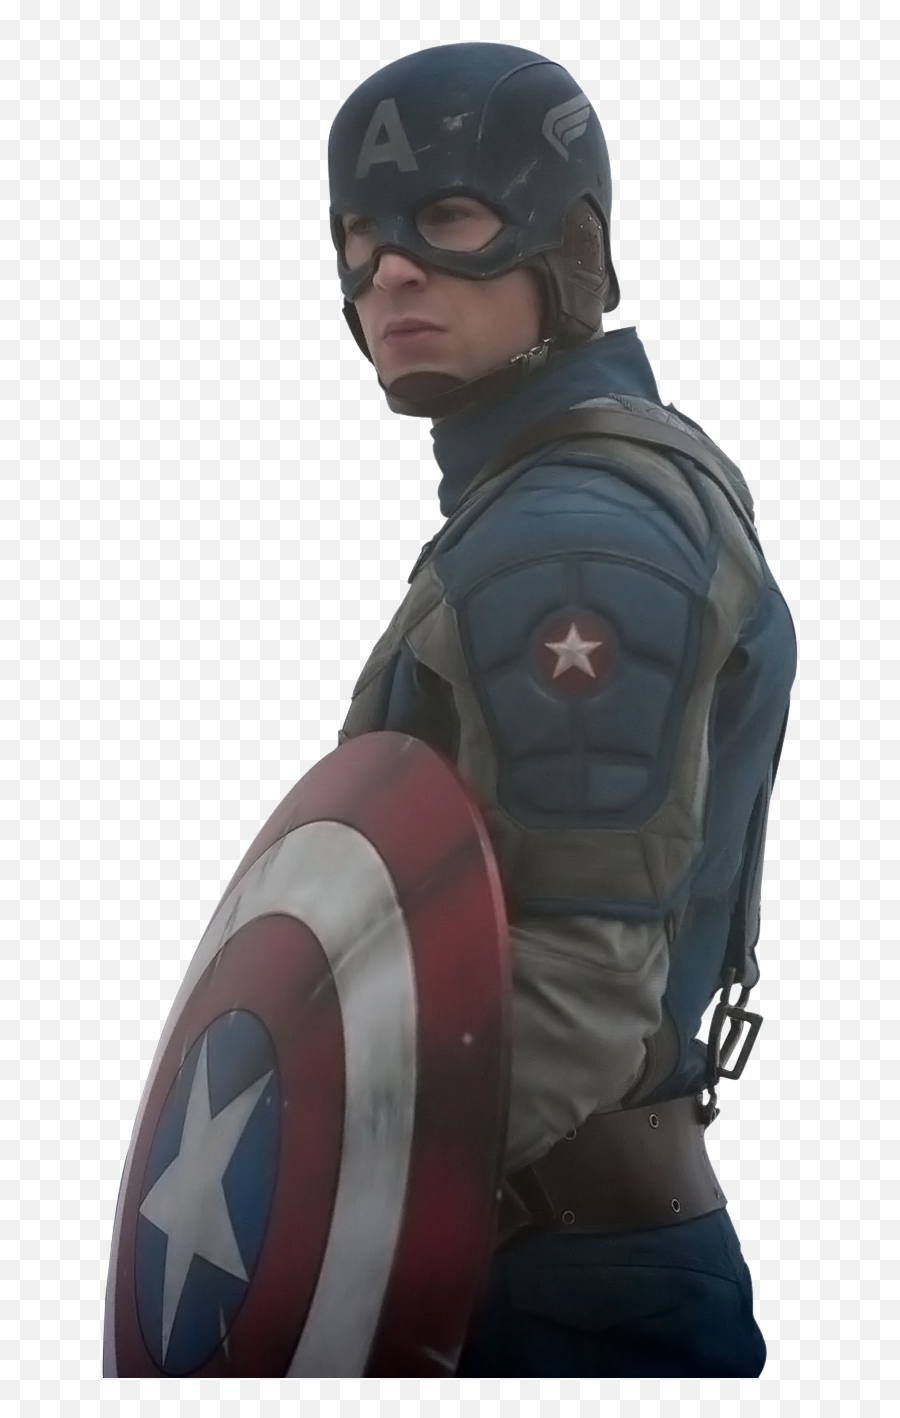 Png Capitão América Captain America Avengers Civil War - Captain America The First Avenger Best,Captain America Infinity War Png